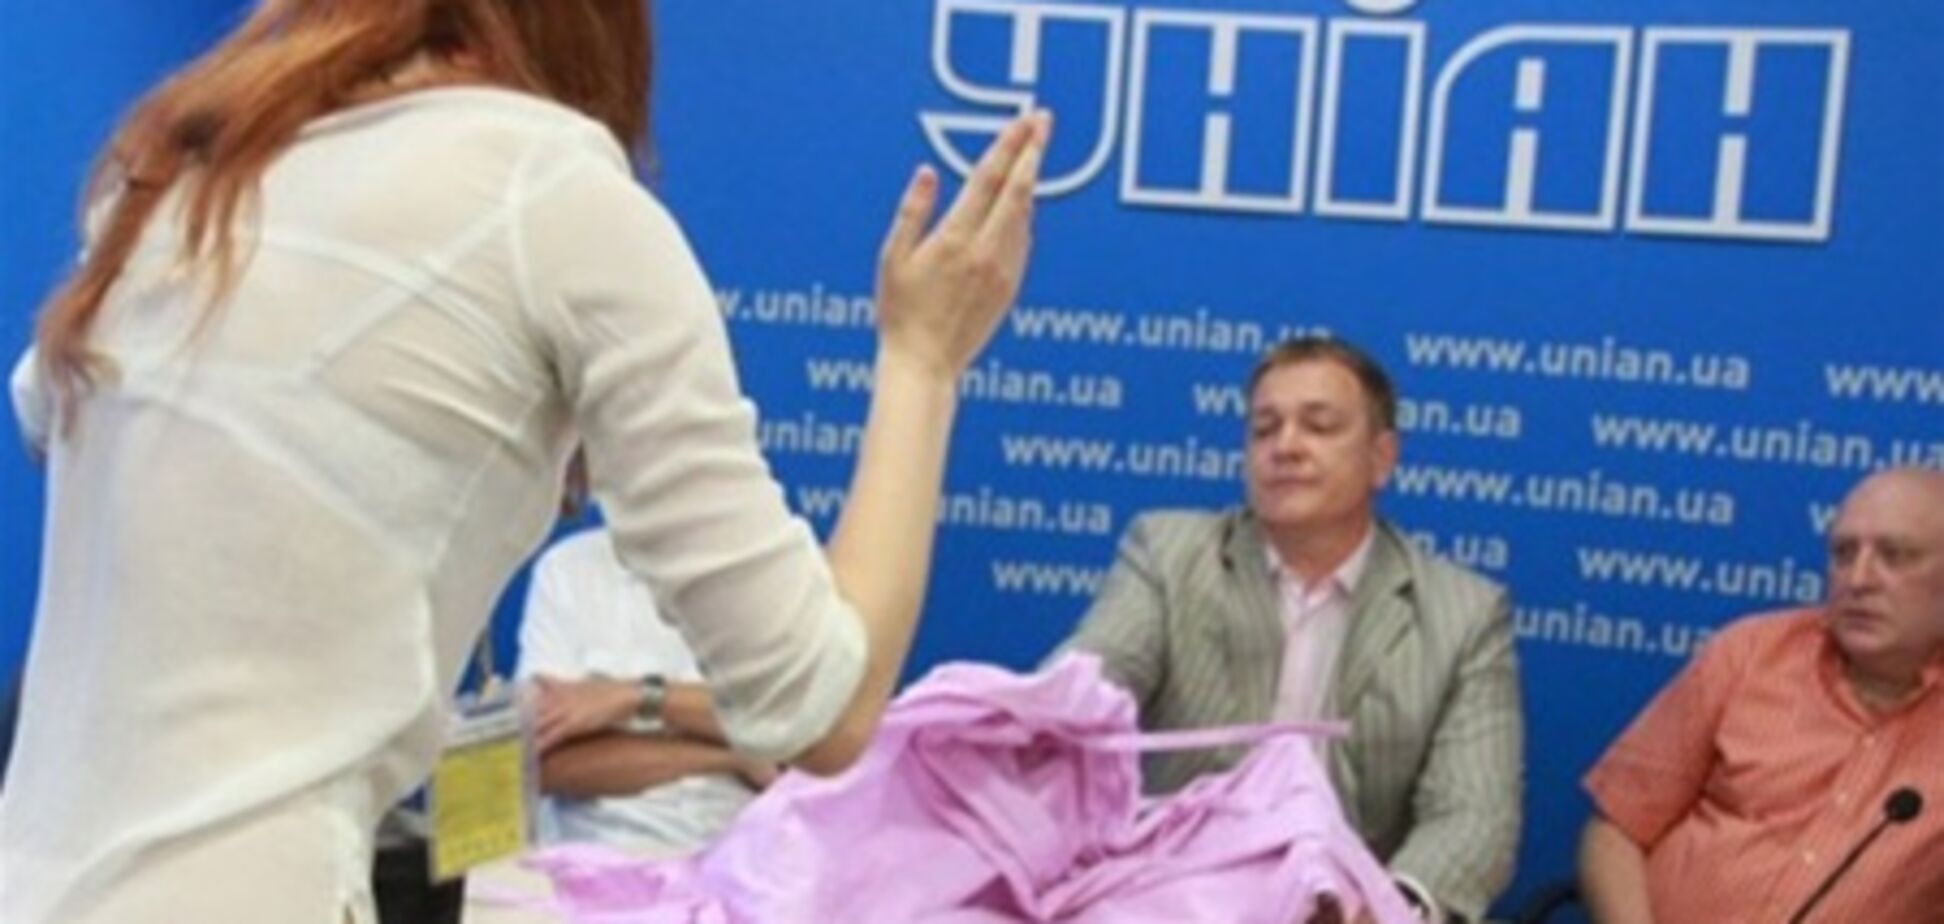 Девушку, бросившую в Колесниченко смирительную рубашку, пока отпустили